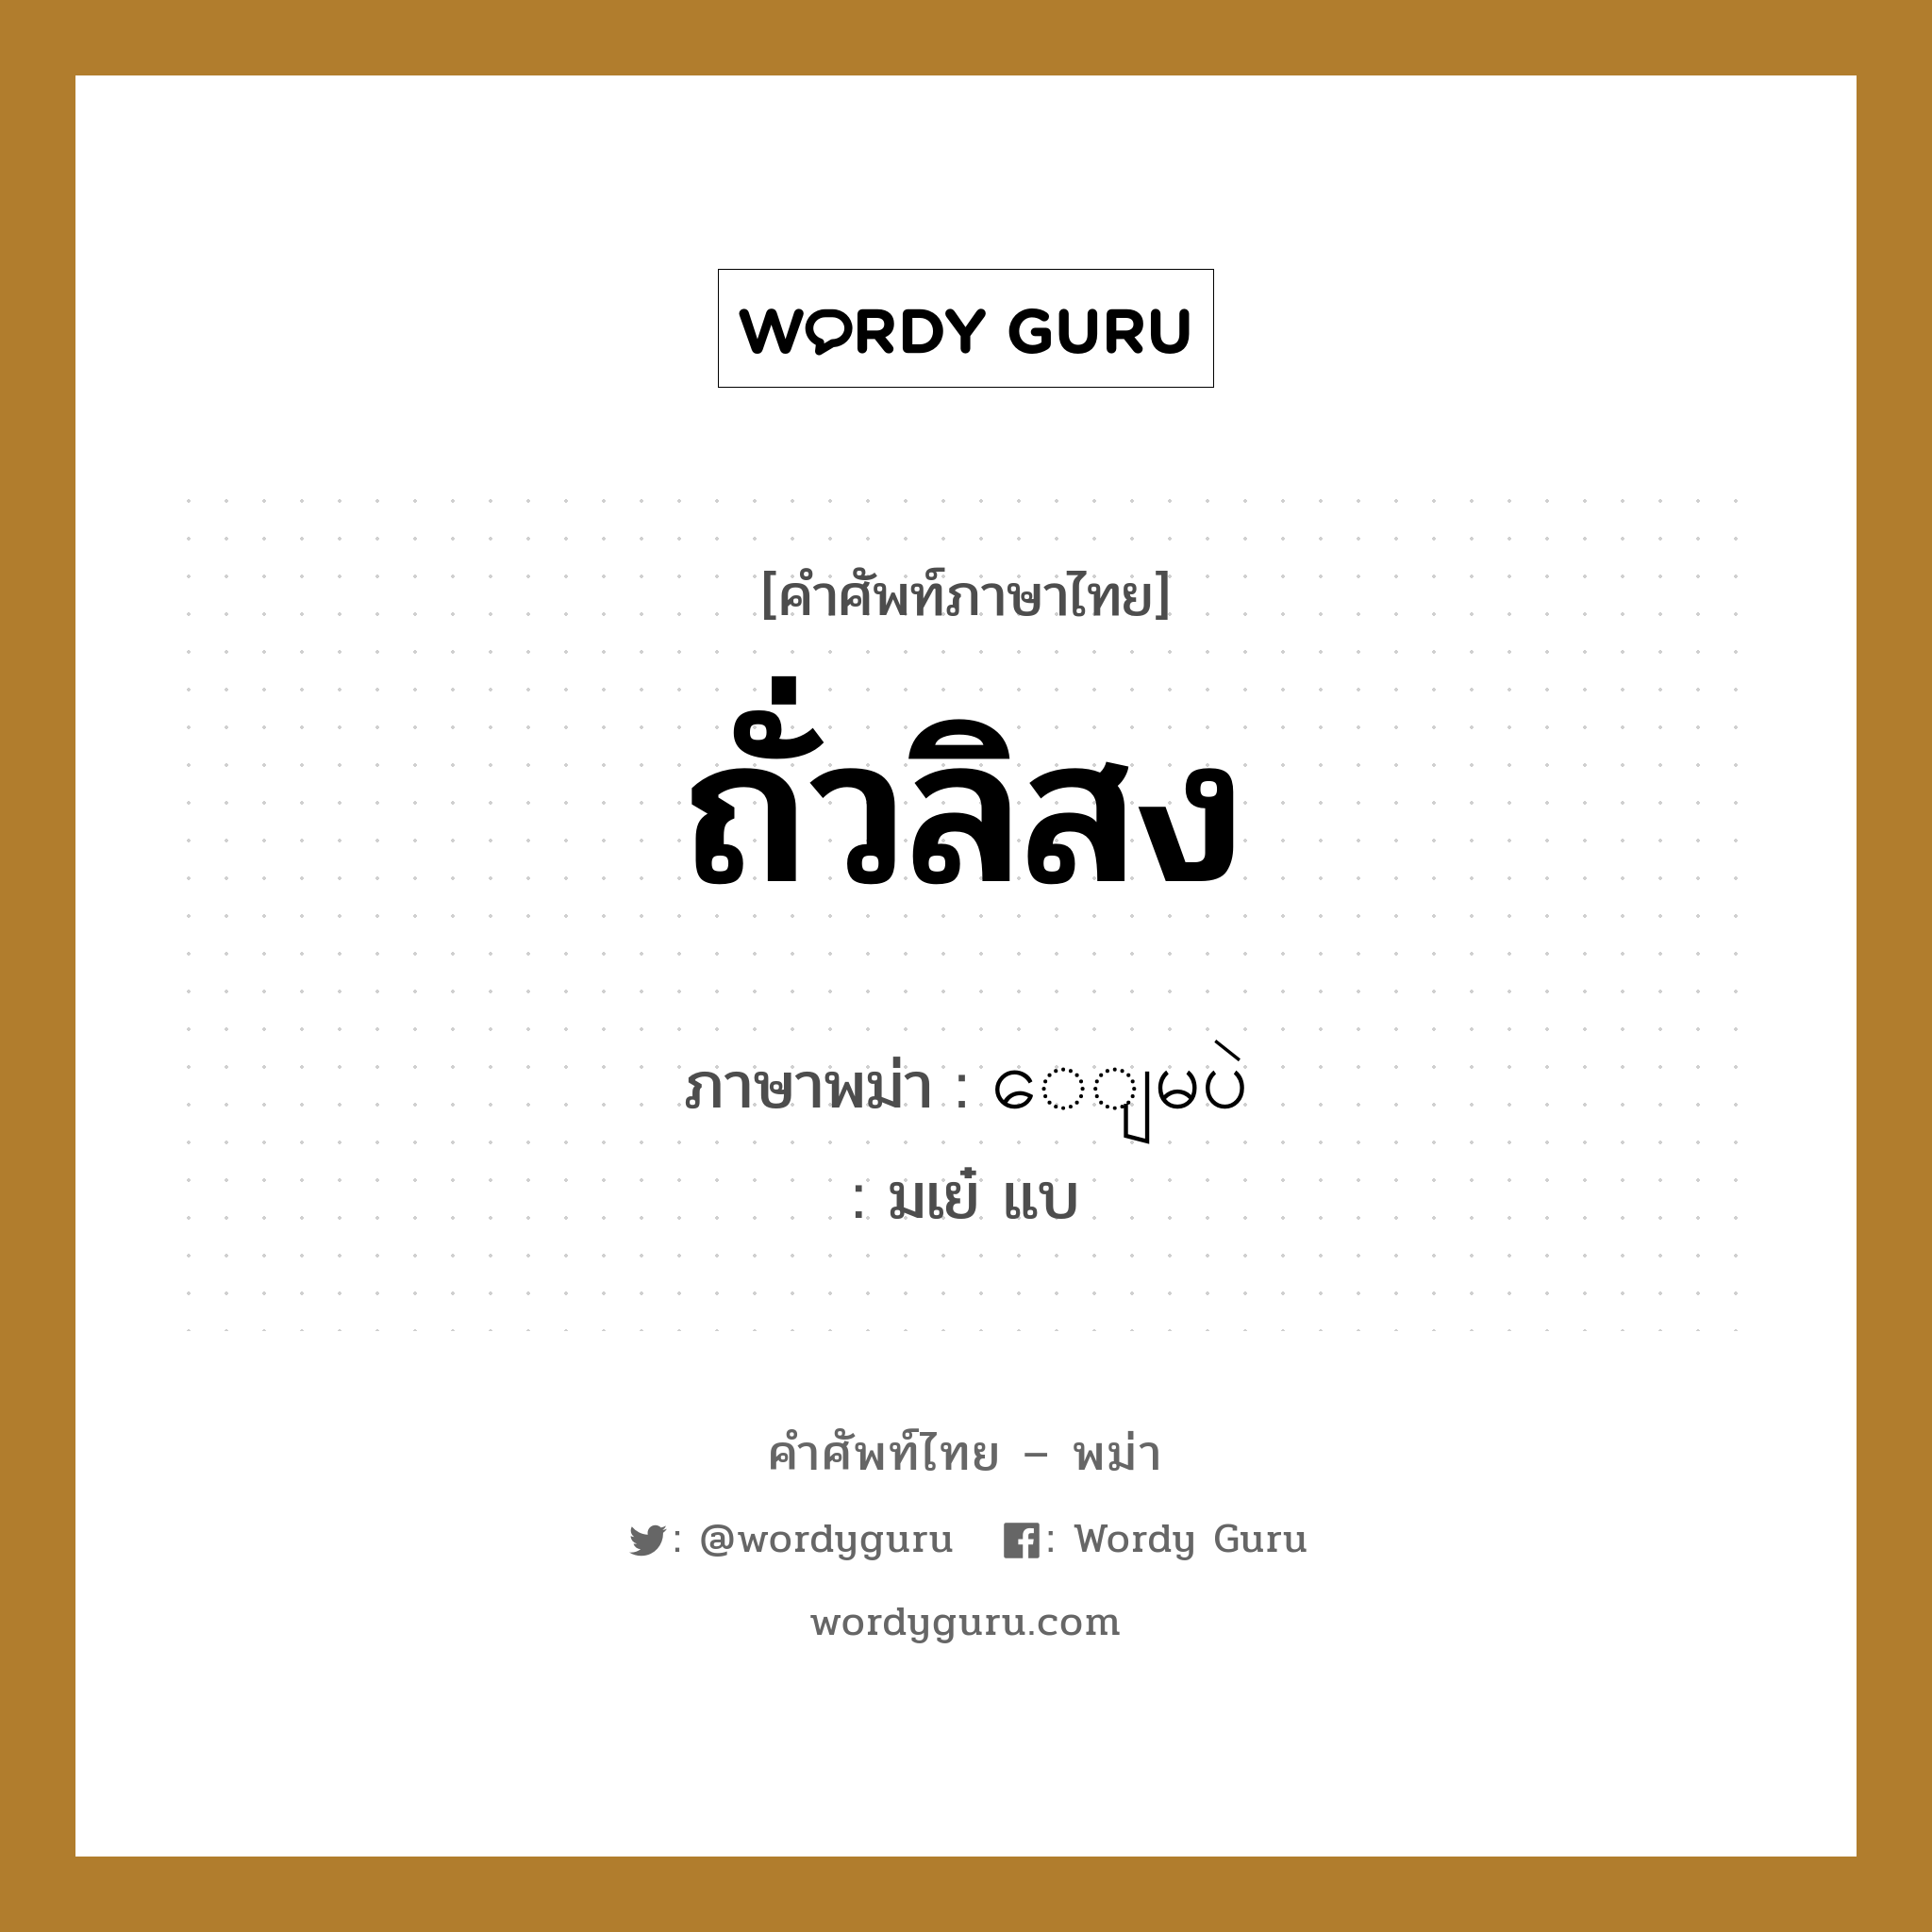 ถั่วลิสง ภาษาพม่าคืออะไร, คำศัพท์ภาษาไทย - พม่า ถั่วลิสง ภาษาพม่า ေျမပဲ หมวด ผักและผลไม้ มเย๋ แบ หมวด ผักและผลไม้